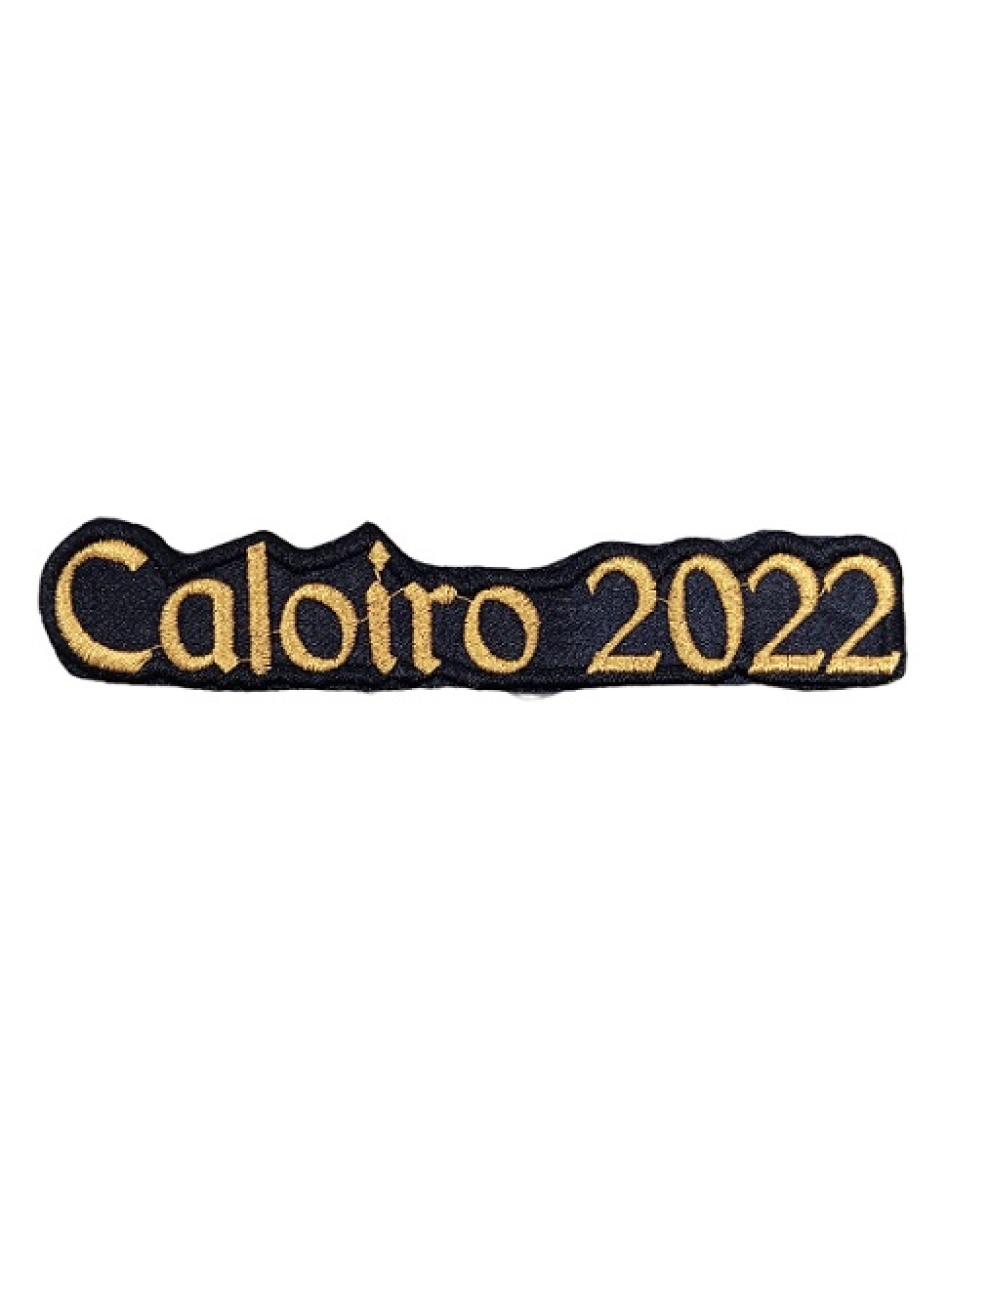 Caloiro 2022